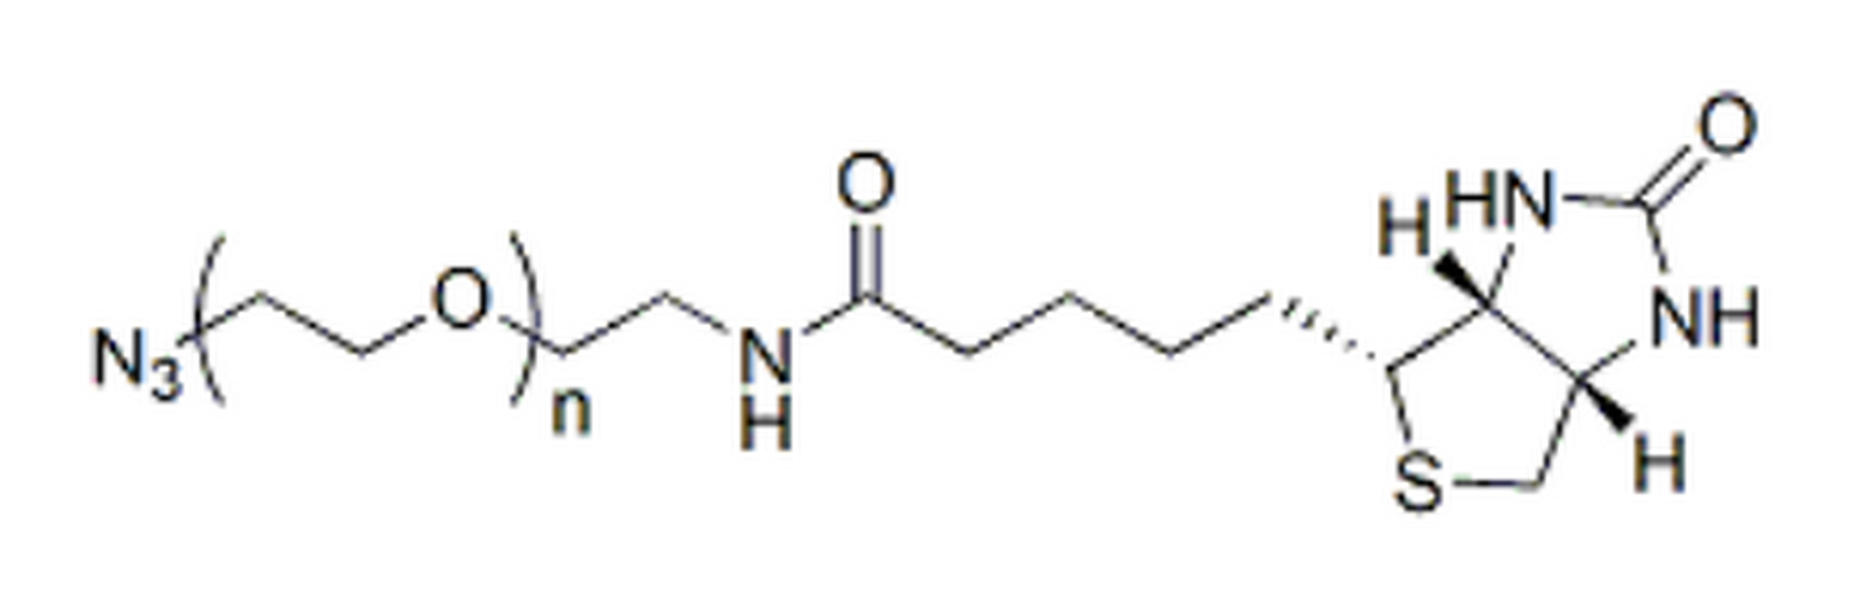 Biotin-PEG-azide, MW 5K